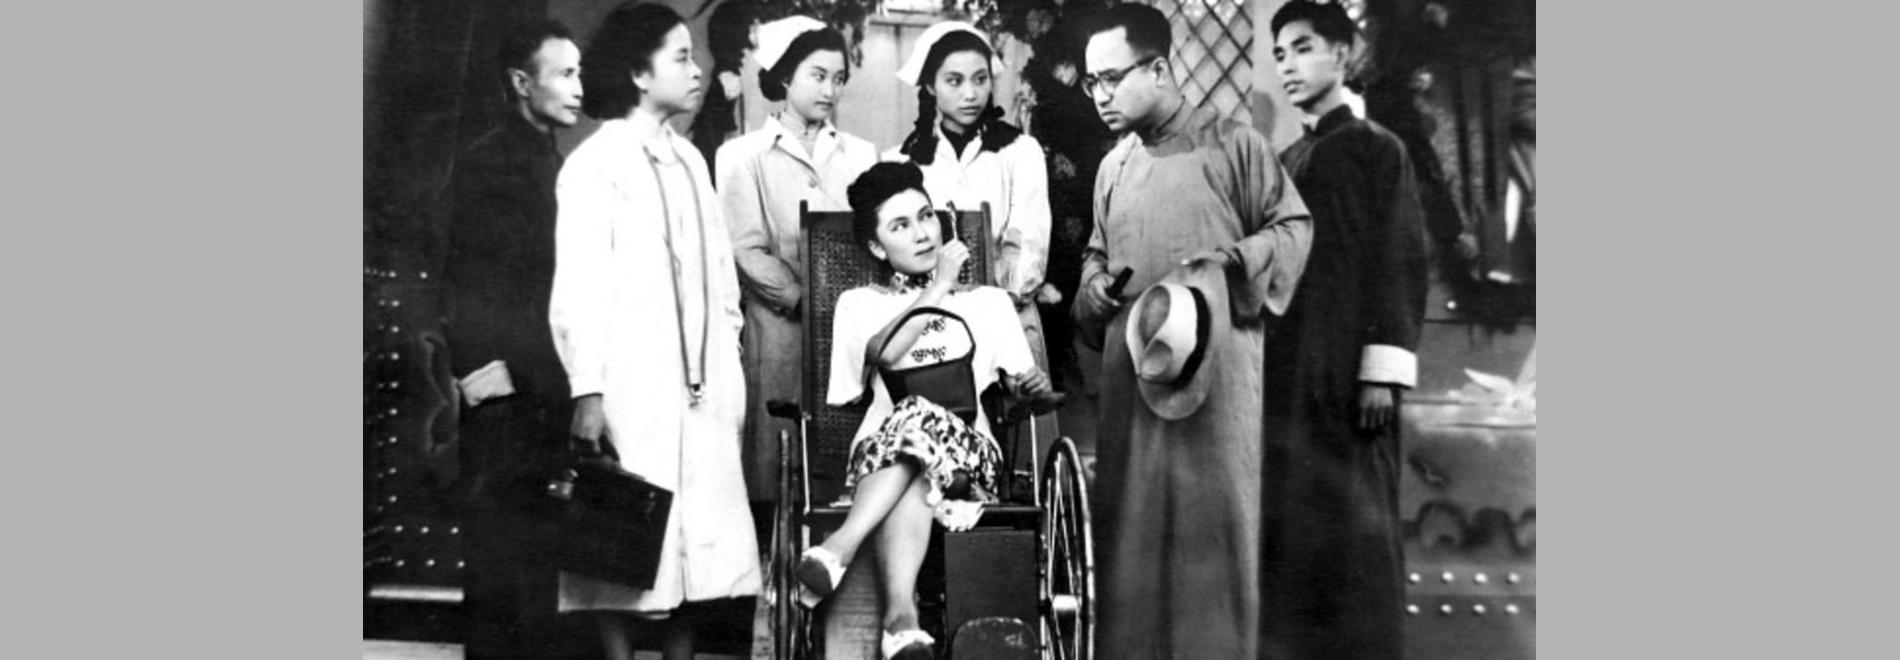 Tai tai wan sui / Llarga vida a la senyora (Sang Hu, 1947)